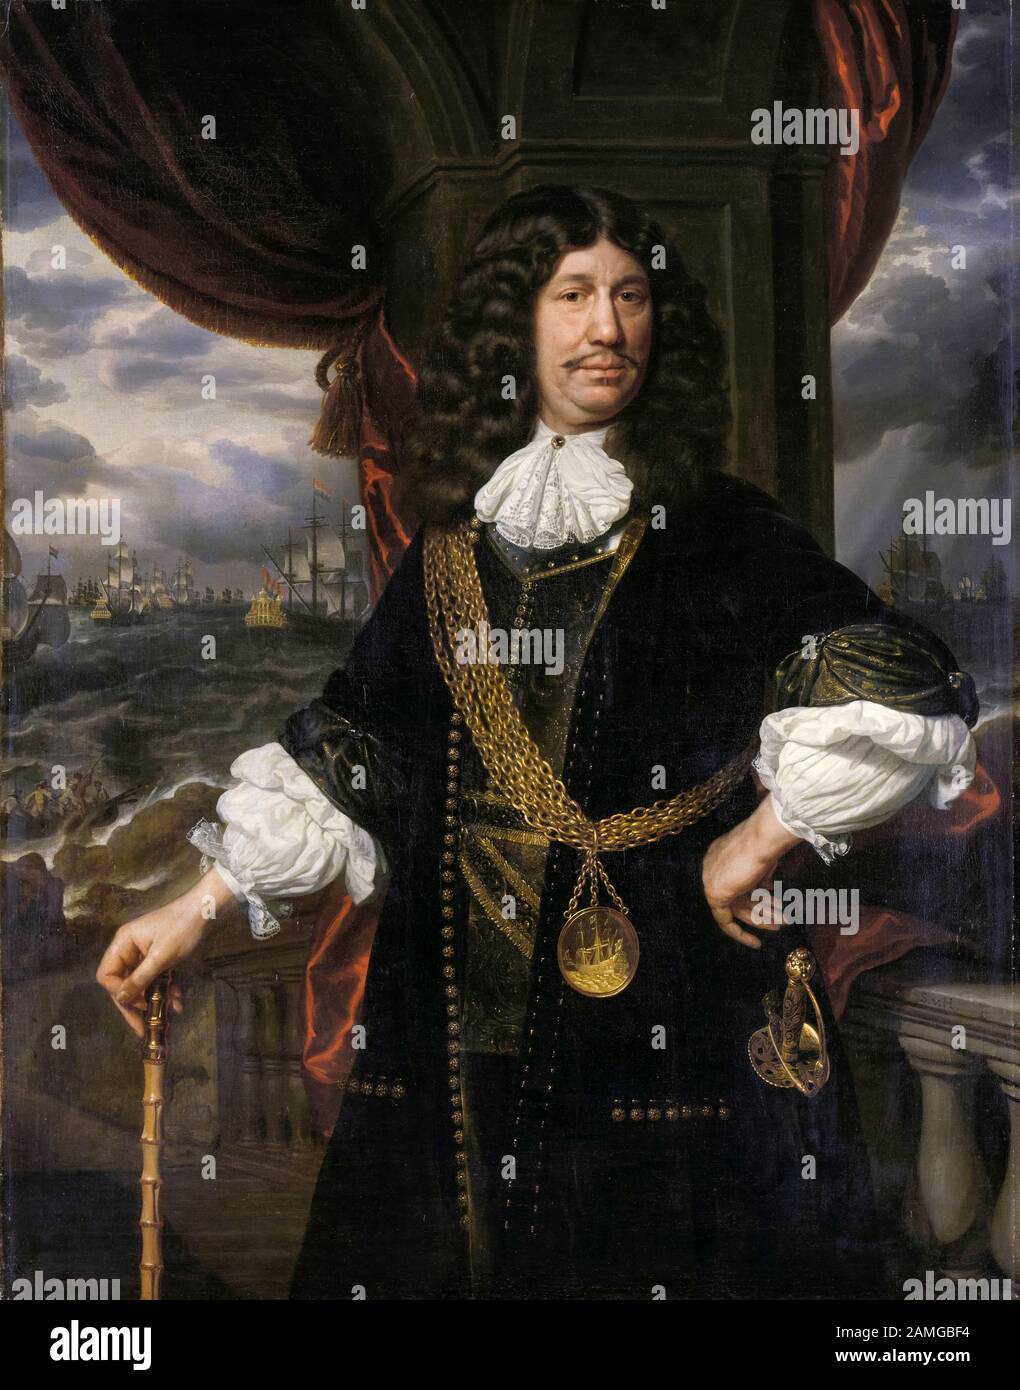 Mattheus van den Broucke (1620-1685), Gobernador de Indias, medalla de la Compañía Holandesa de la India Oriental, pintura de retratos de Samuel Dirksz van Hoogstraten, 1670-1678 Foto de stock